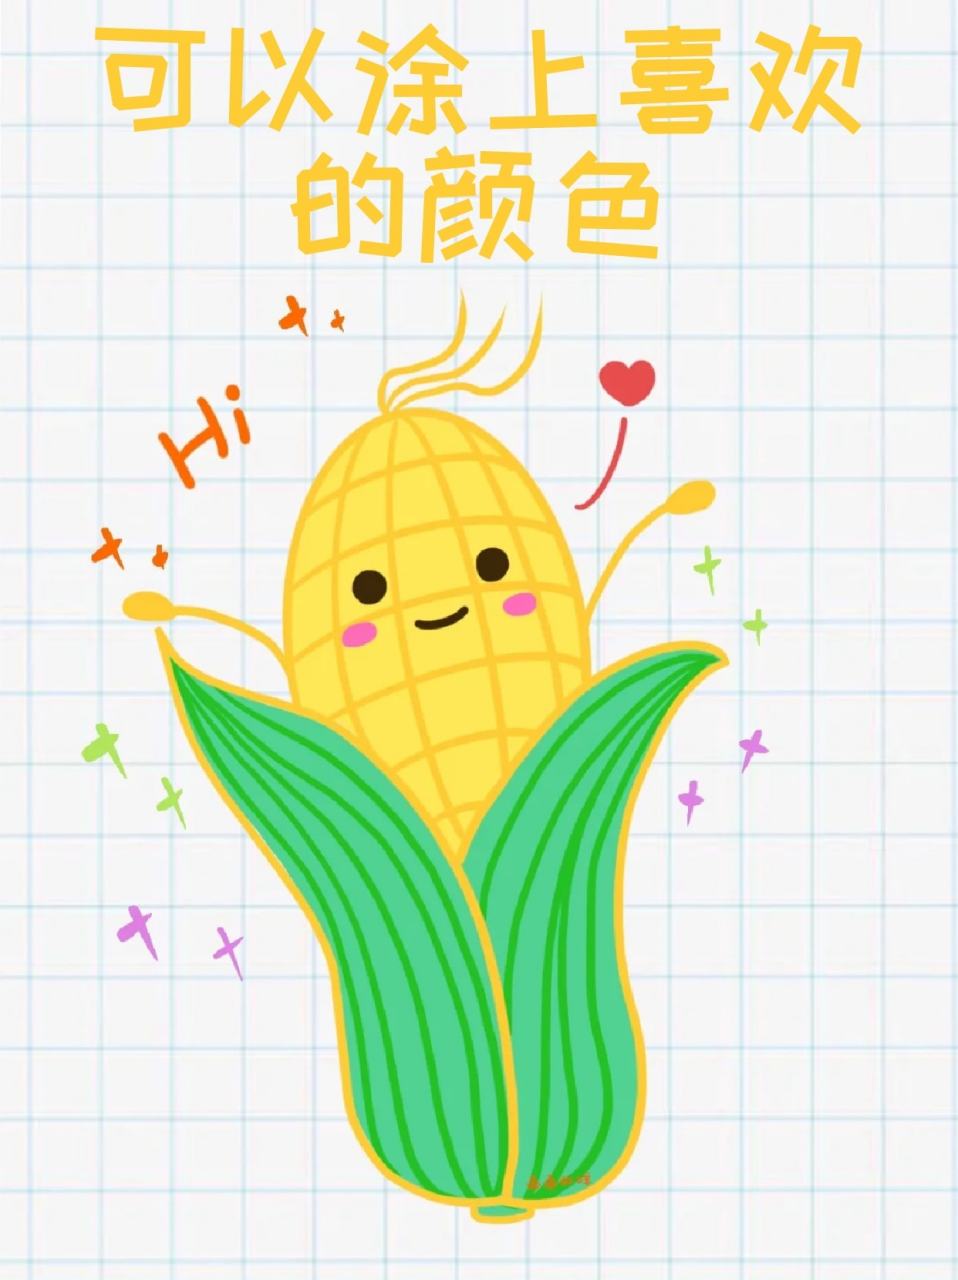 玉米简笔画 96宝子们有喜欢吃玉米的么,我是很喜欢吃,之前减肥吃西